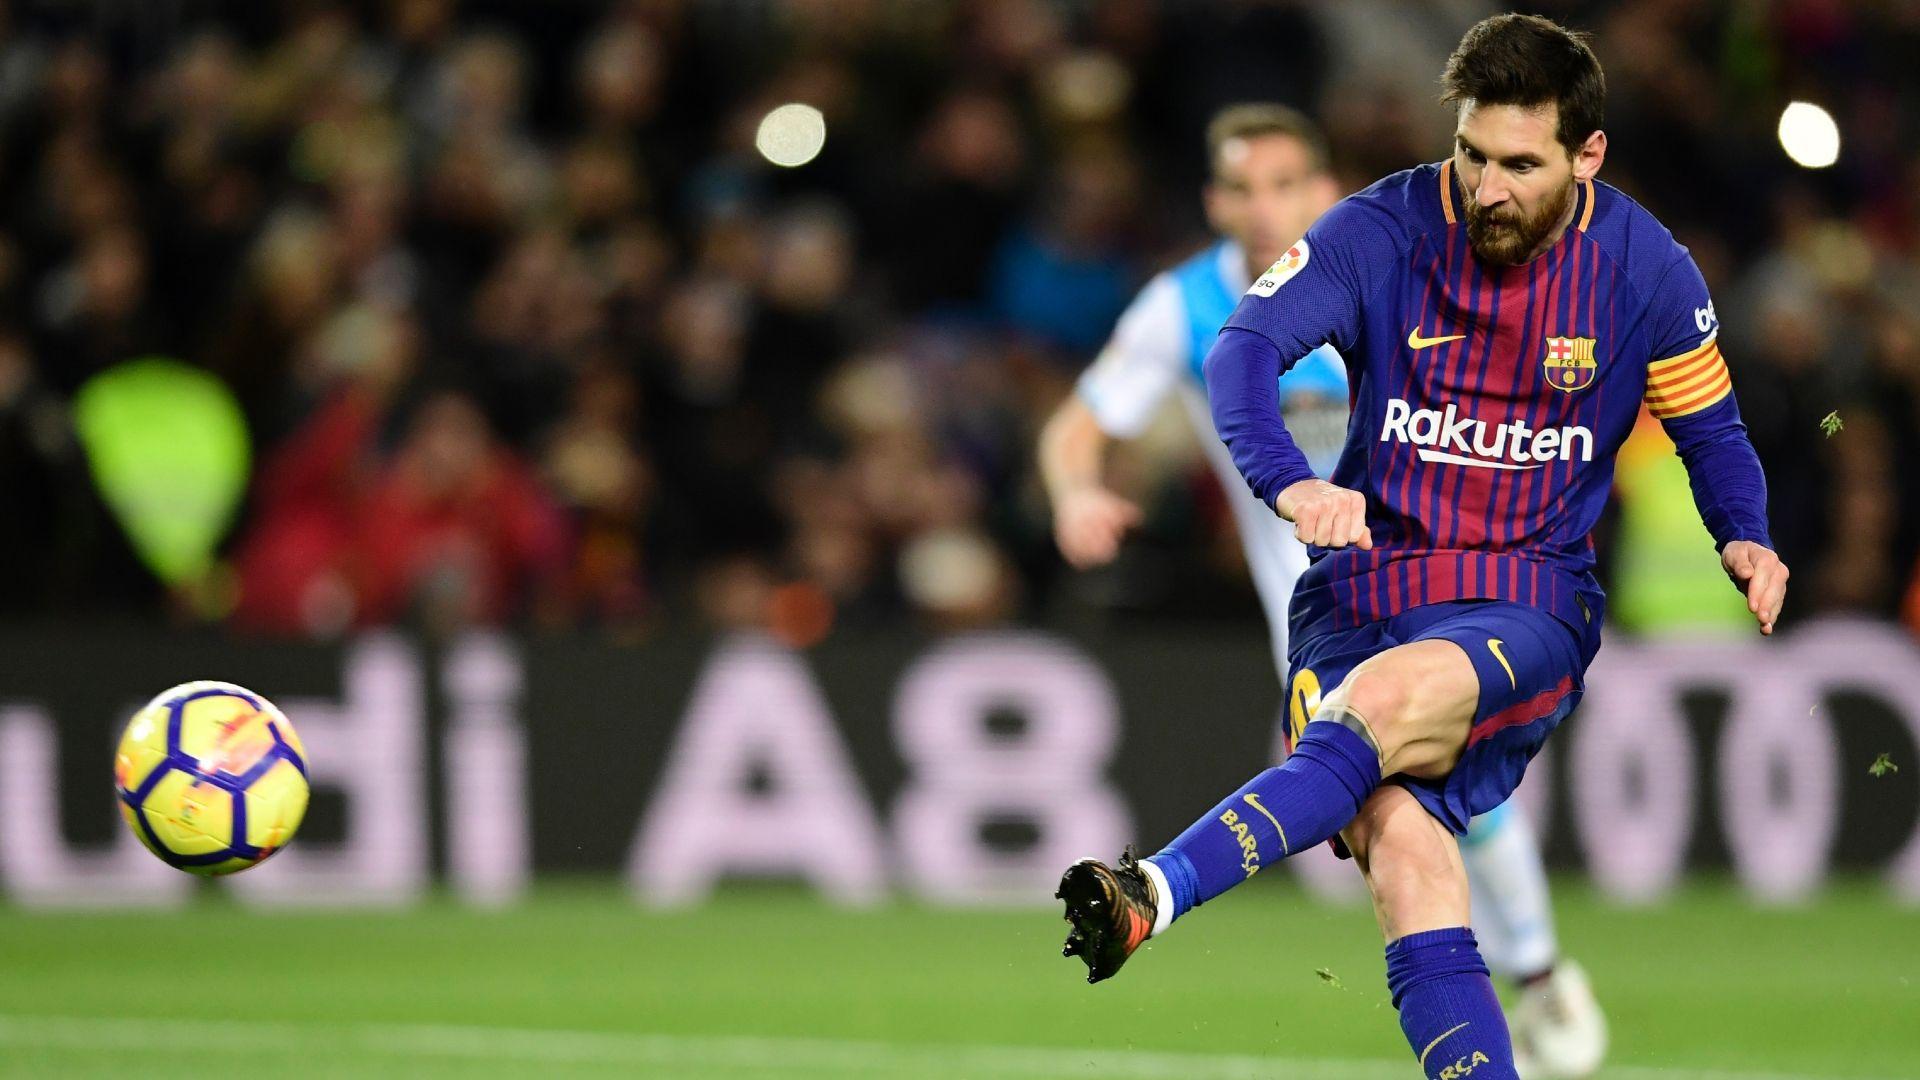 Thưởng thức nghệ thuật bóng đá của Lionel Messi với bức ảnh nền Messi shooting cực kỳ sống động. Tận hưởng mỗi khoảnh khắc đặc biệt khi cậu ta kéo cú sút của mình và tạo ra những giây phút kỳ diệu trên sân cỏ.